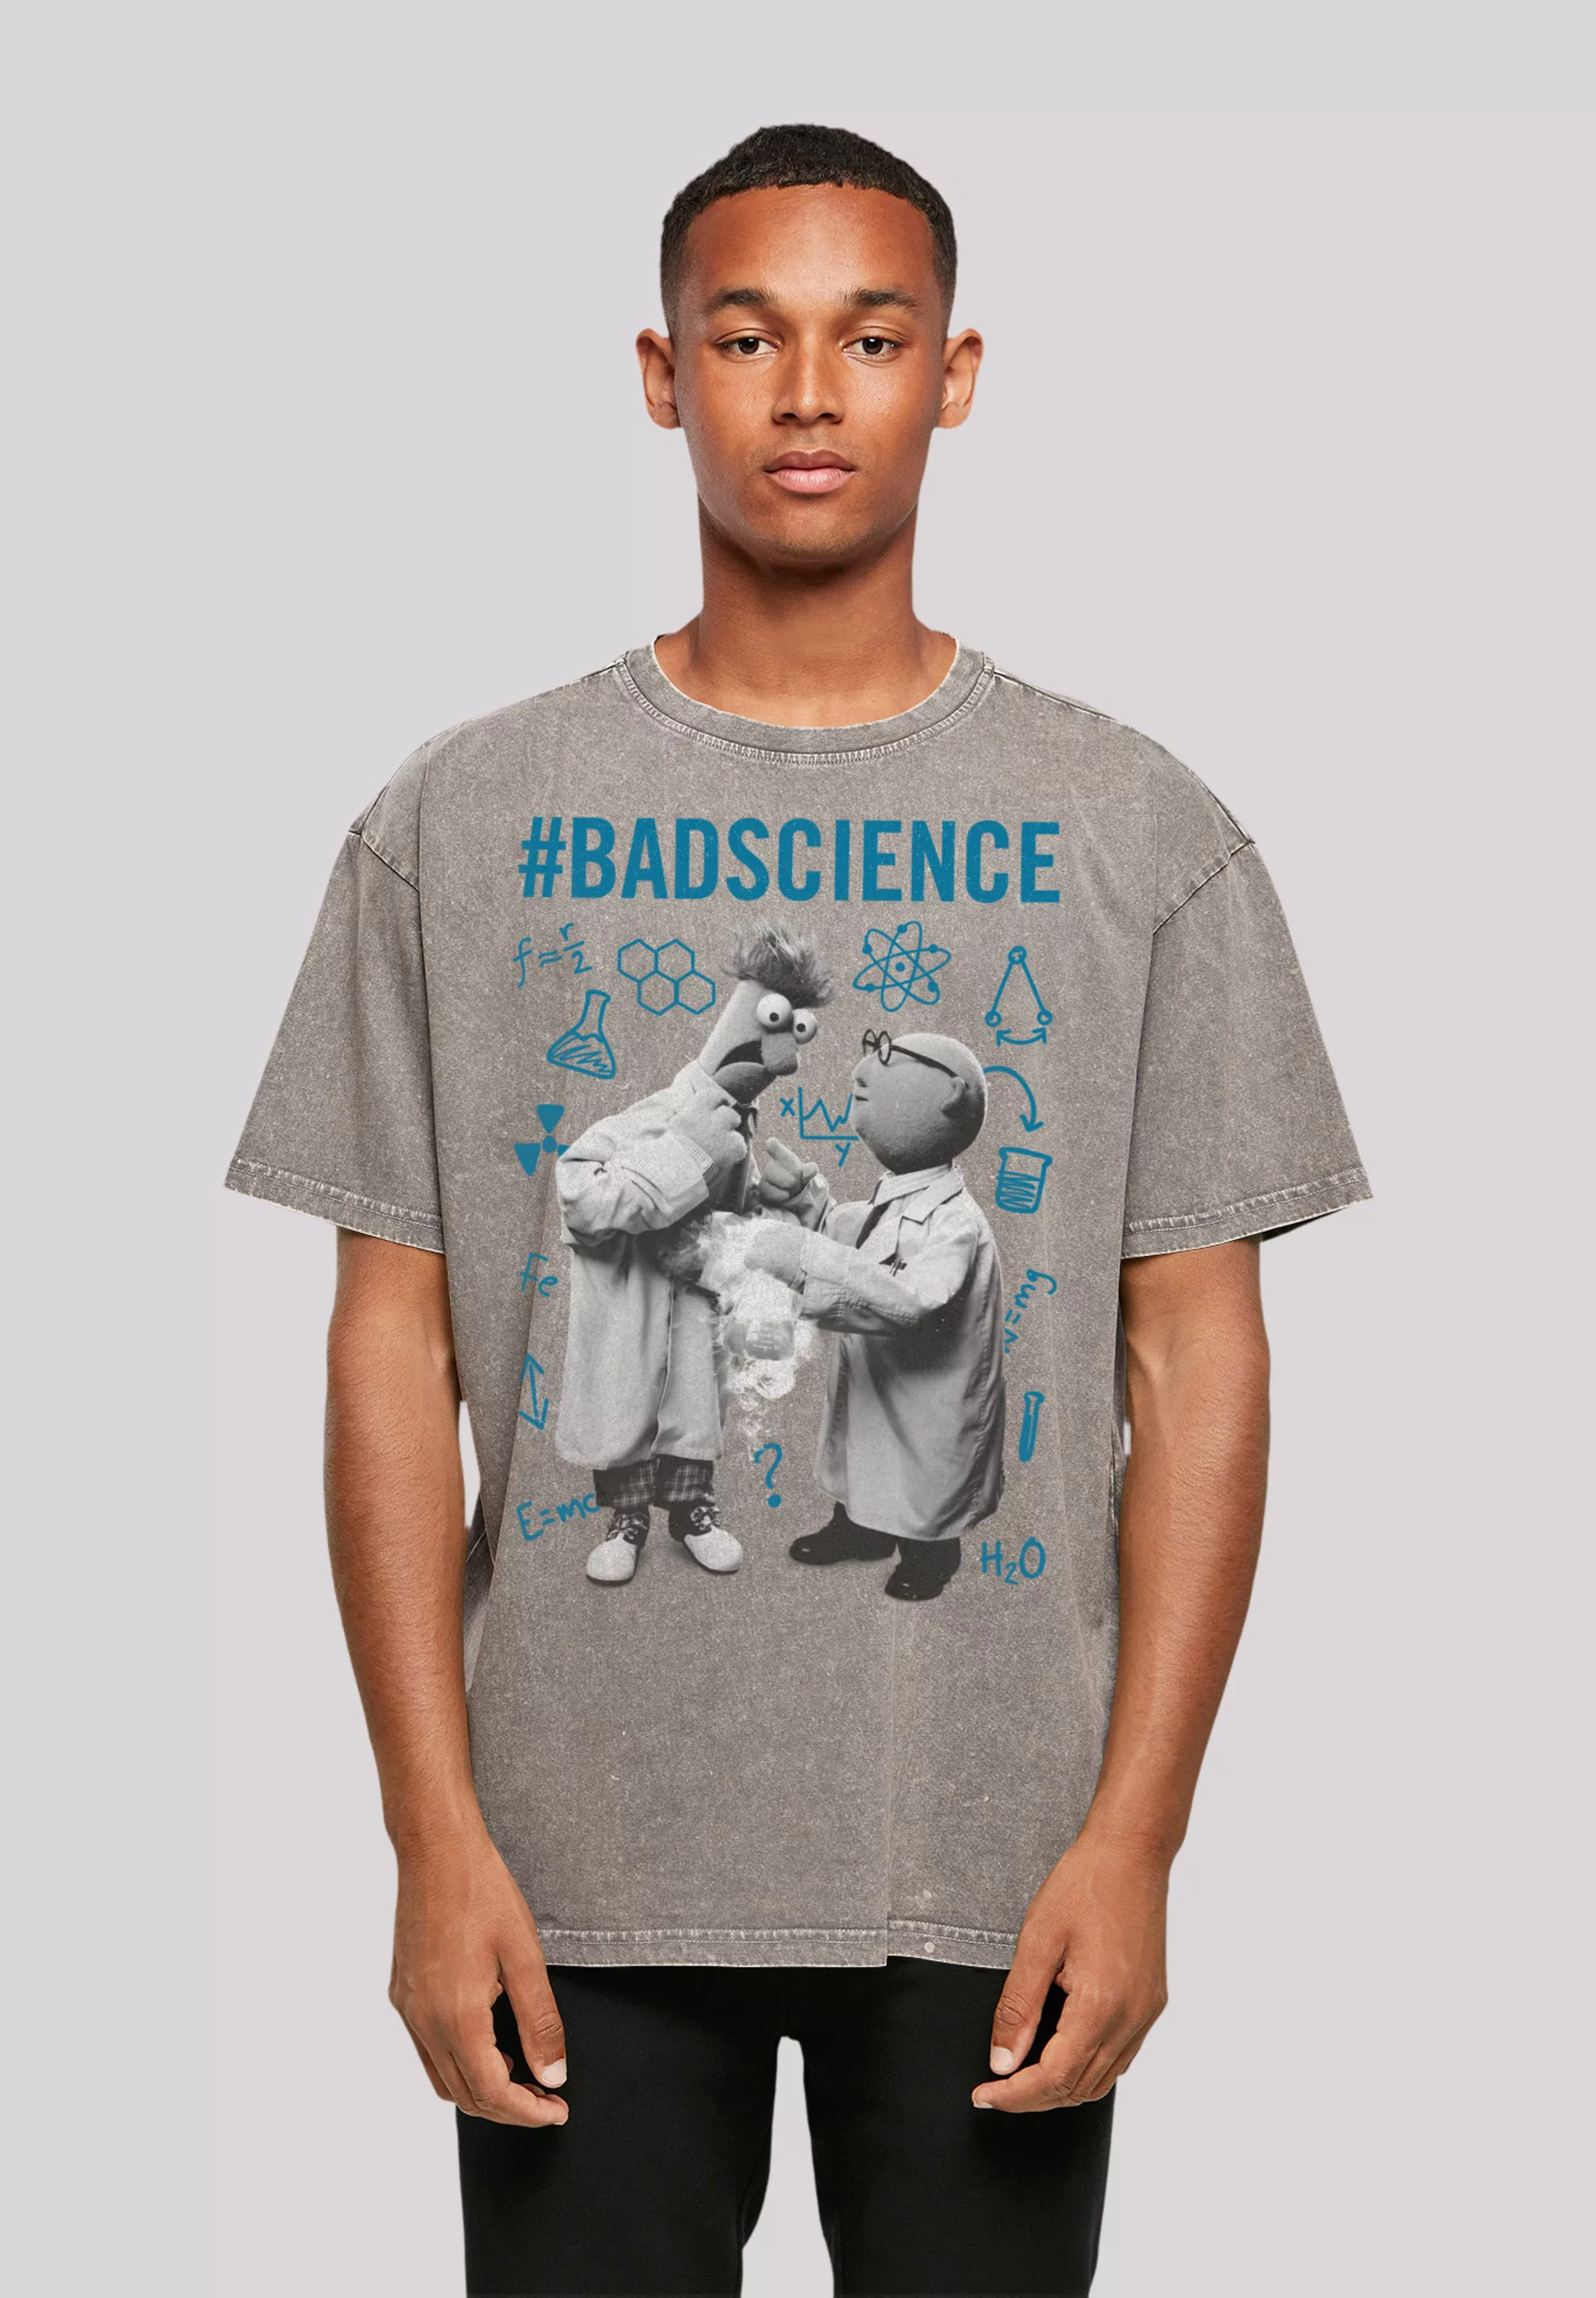 F4NT4STIC T-Shirt "Disney Muppets BadScience", Premium Qualität günstig online kaufen